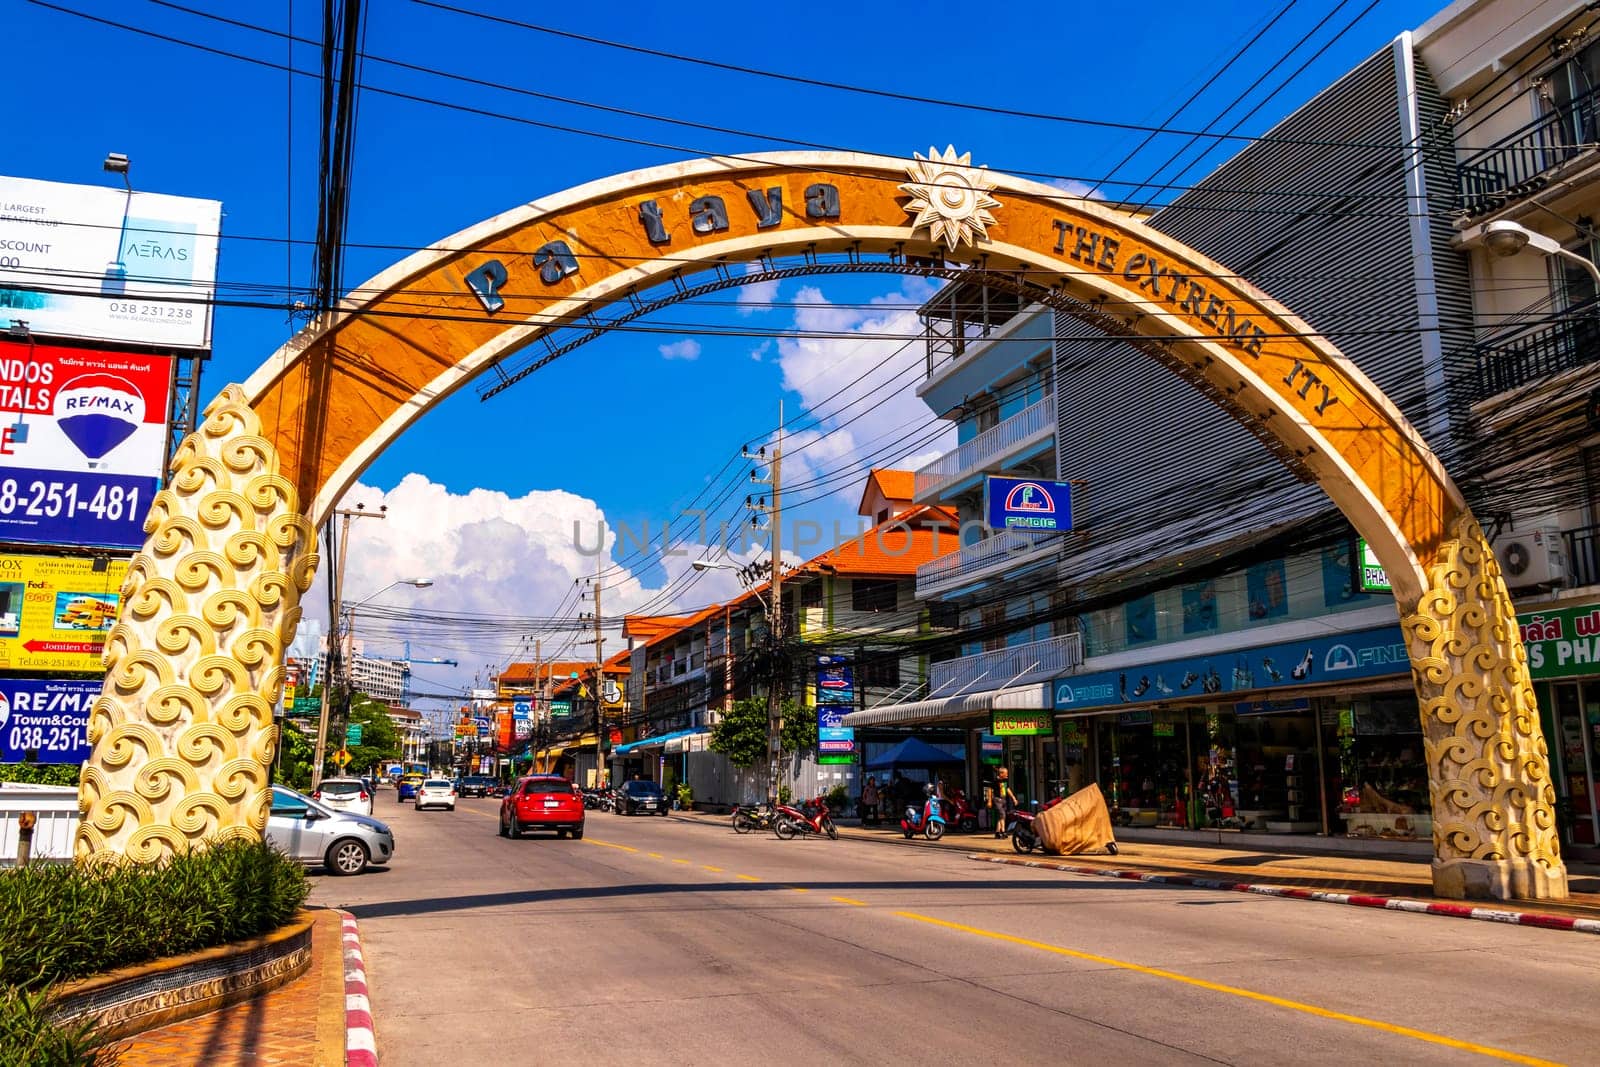 Pattaya Chon Buri Thailand 27. October 2018 City arch Extreme city and street in Pattaya Bang Lamung Amphoe Chon Buri Thailand in Southeastasia Asia.